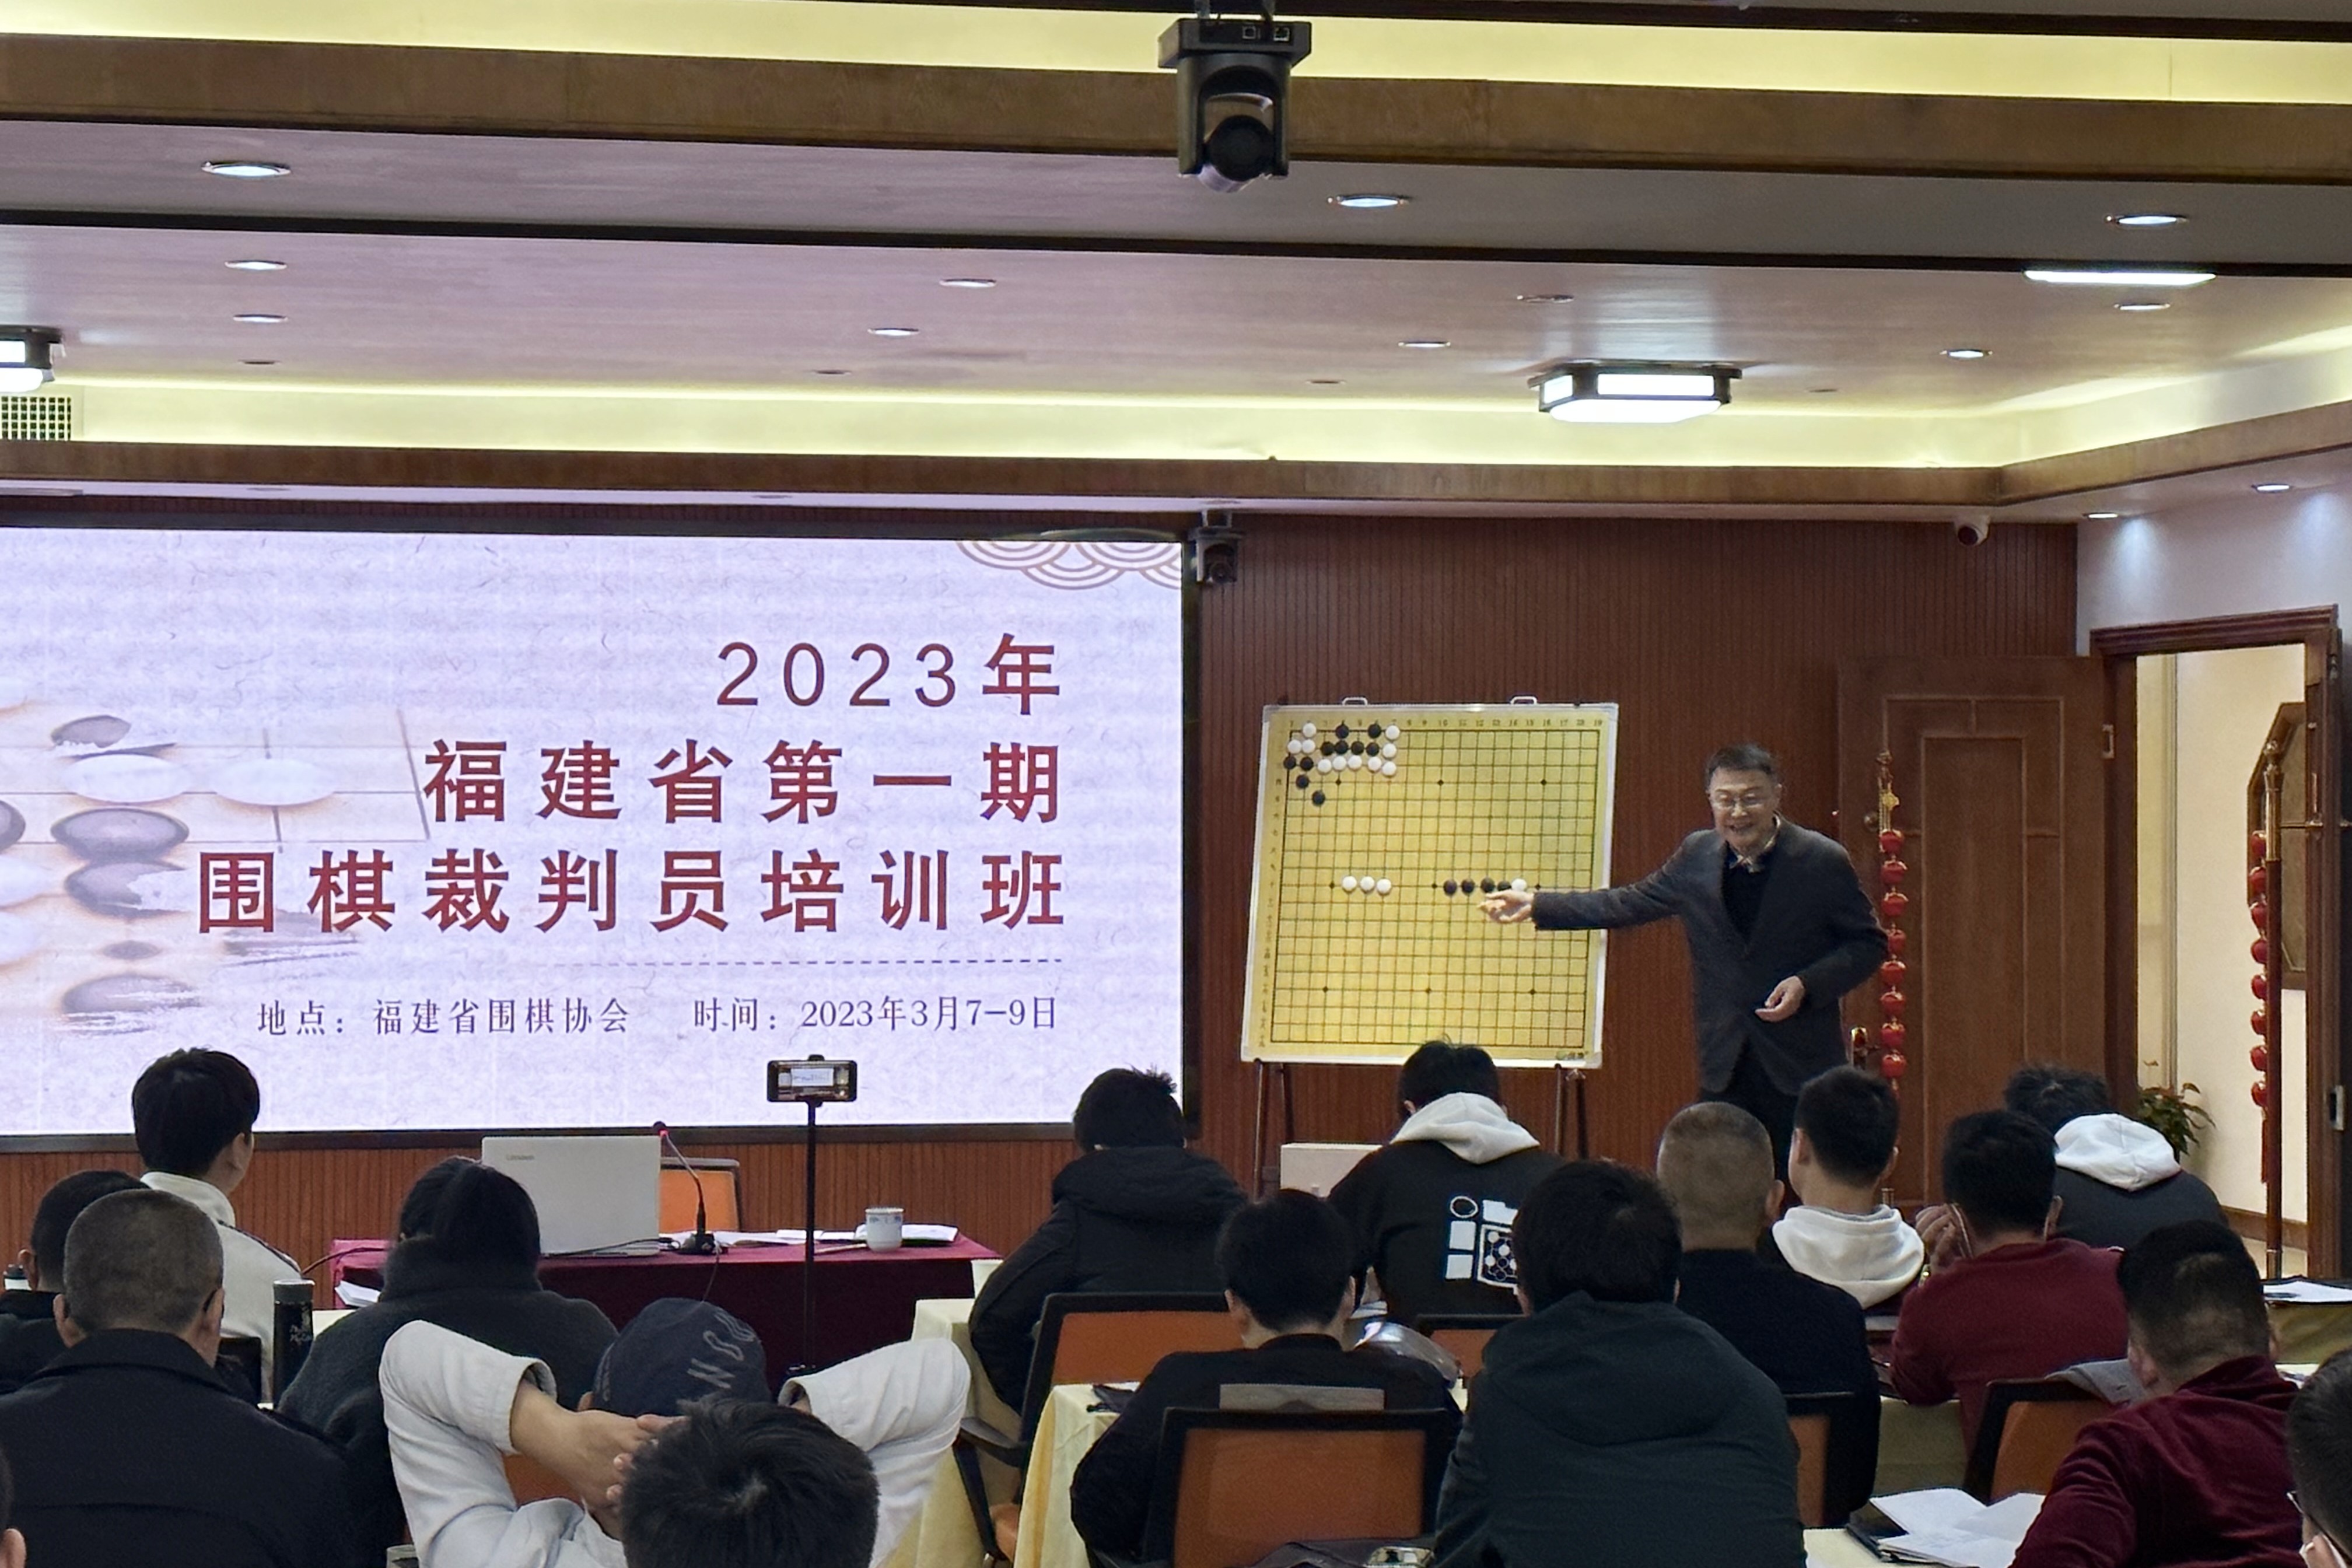 2023年福建省第一期围棋裁判培训班圆满结束